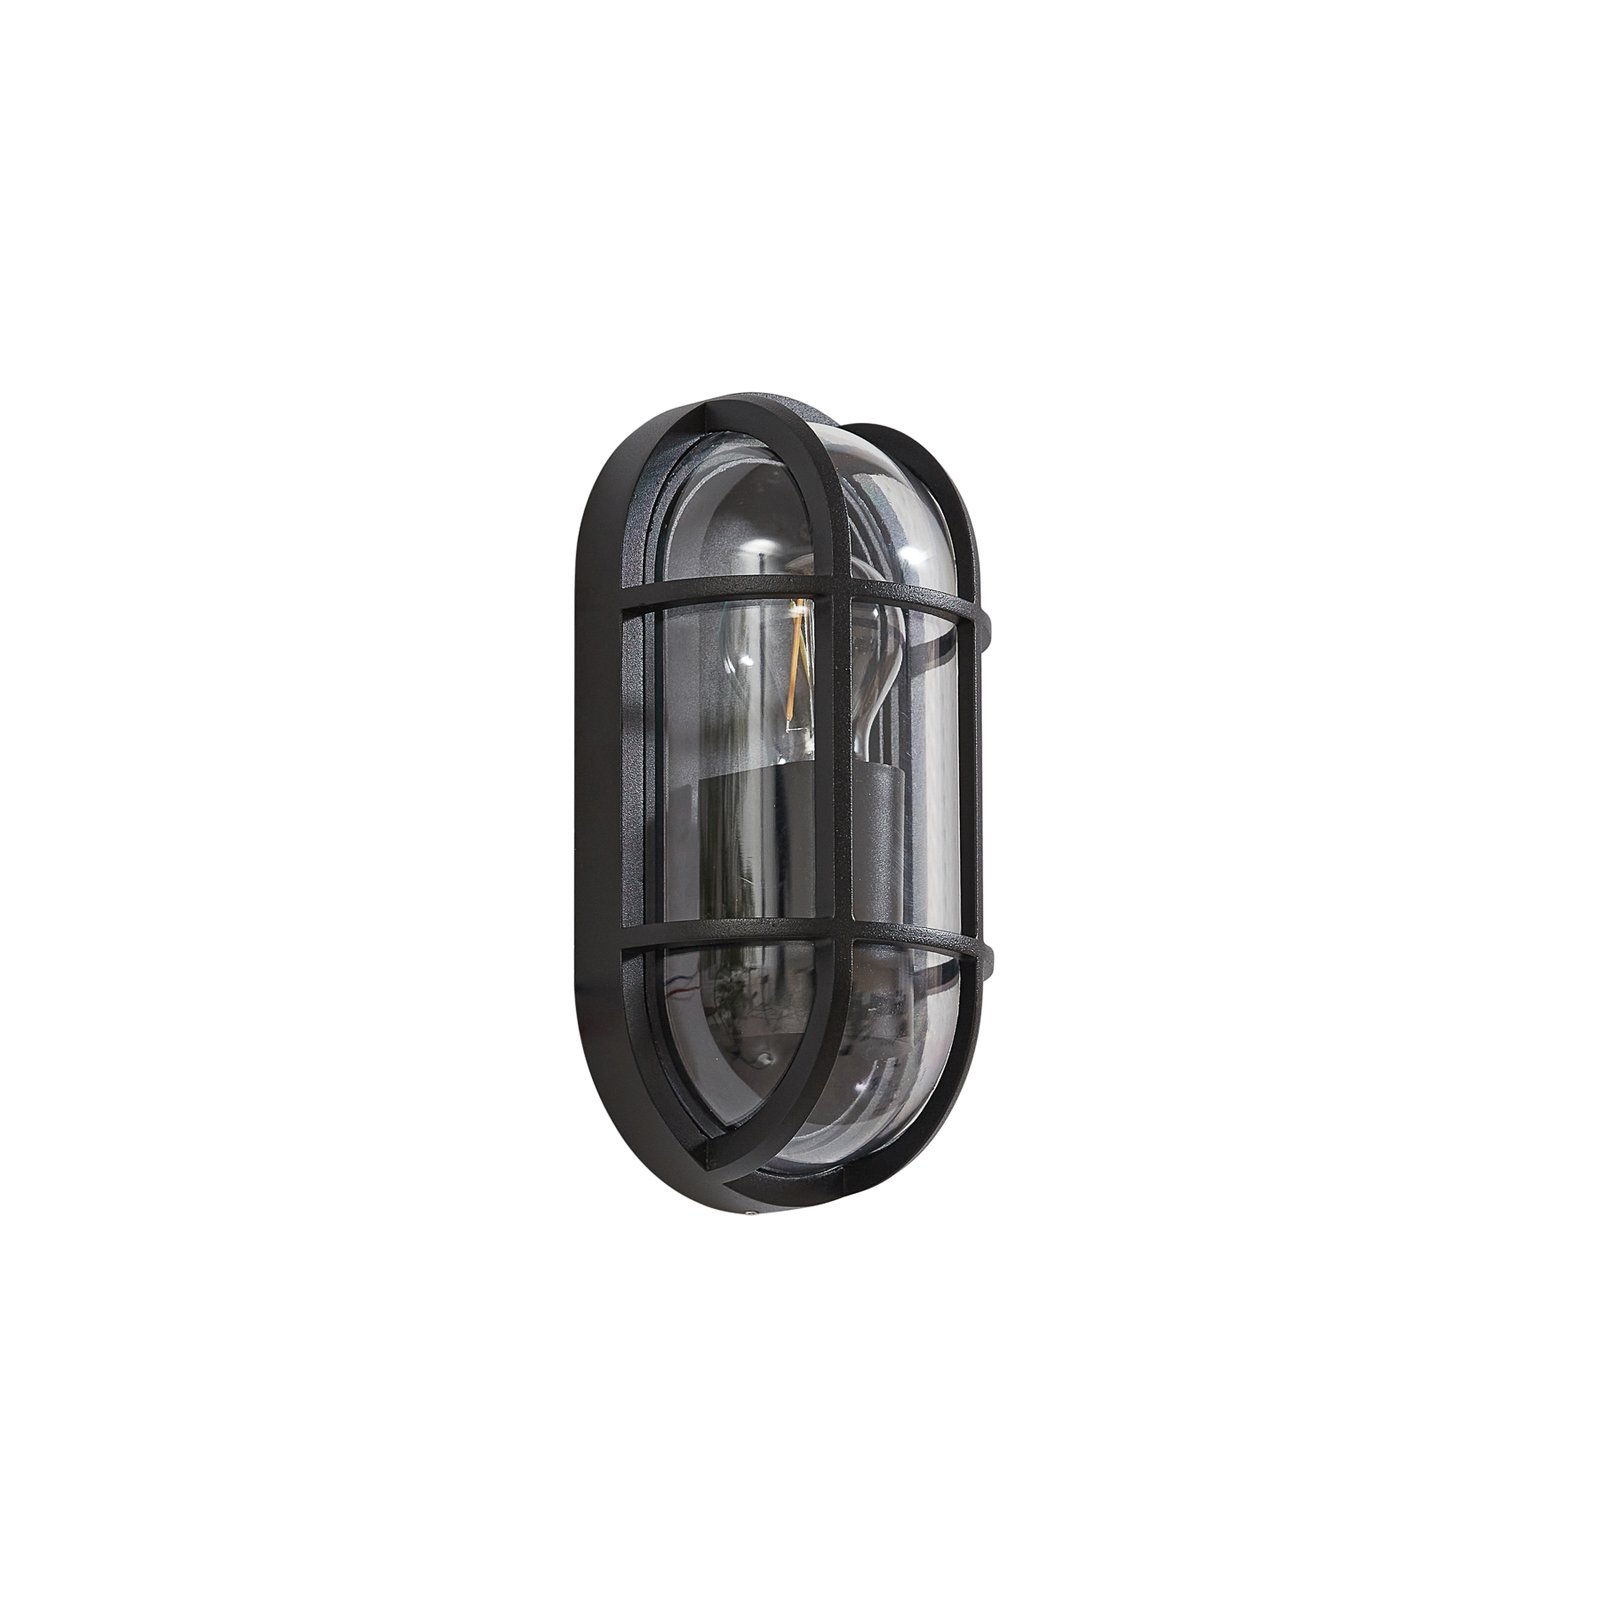 Lucande Serine outdoor wall light, 27.1 cm, black, aluminium